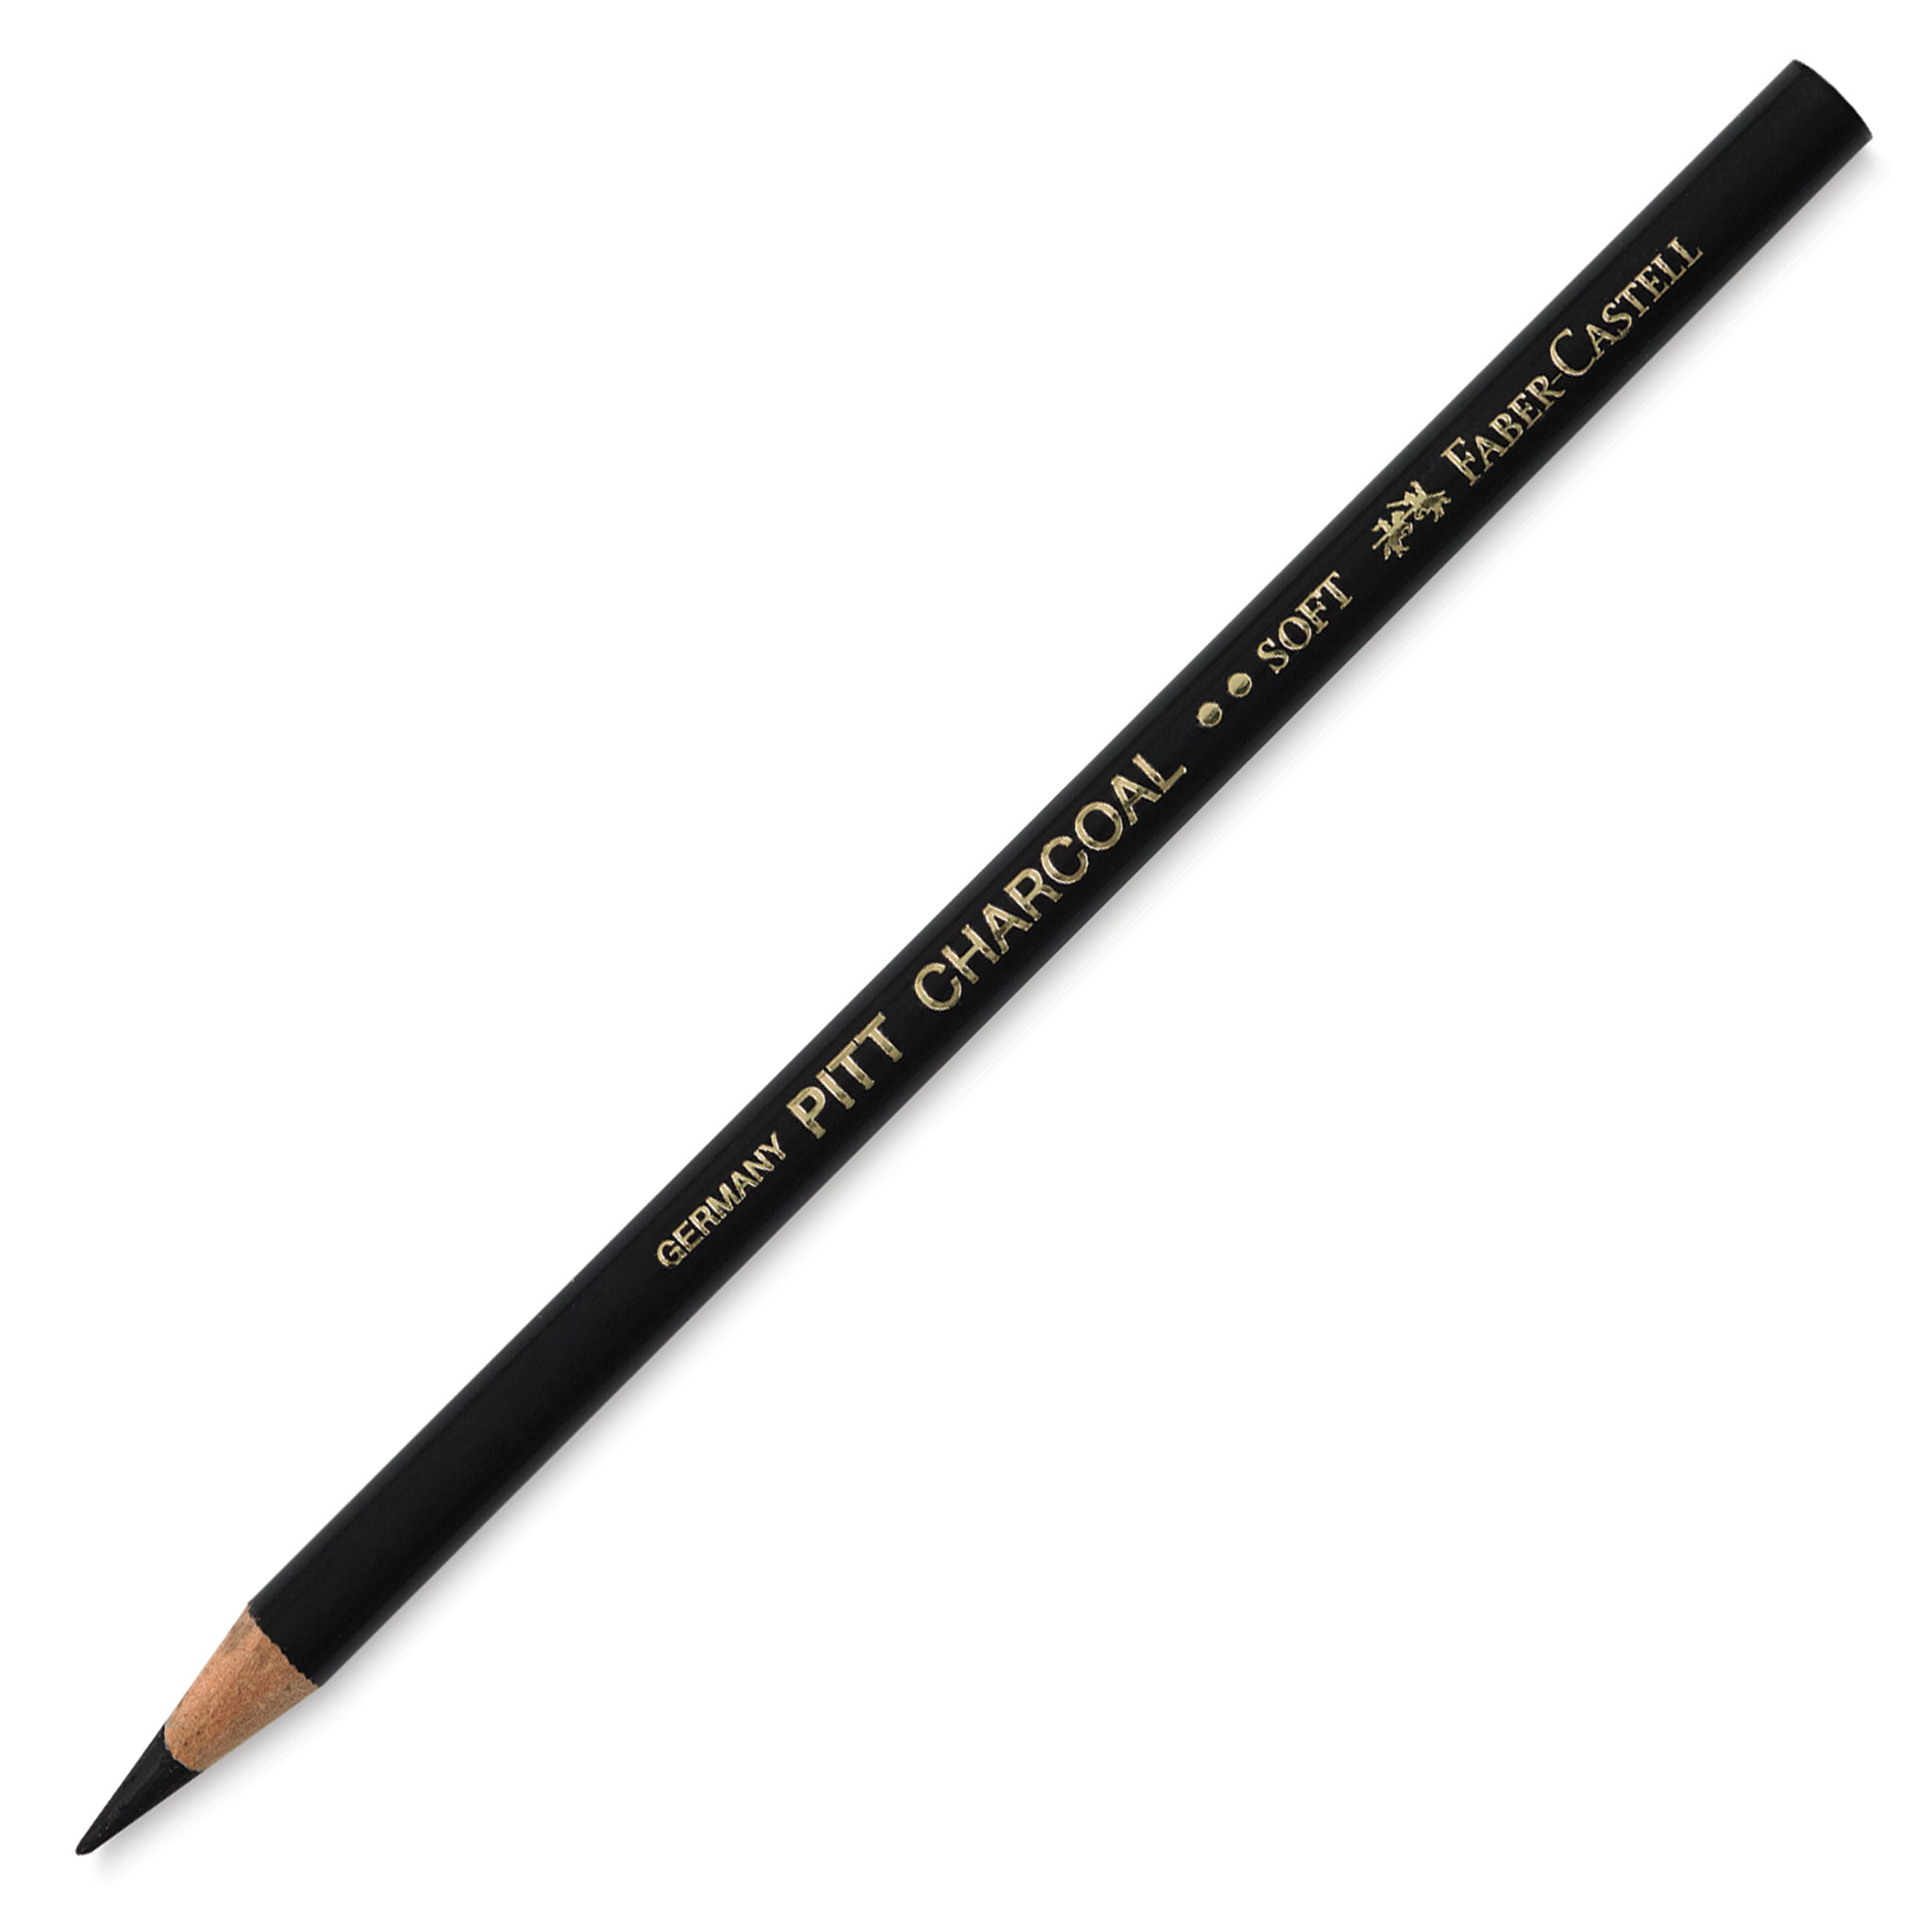 General Pencil Peel & Sketch Charcoal Pencils 3/Pkg